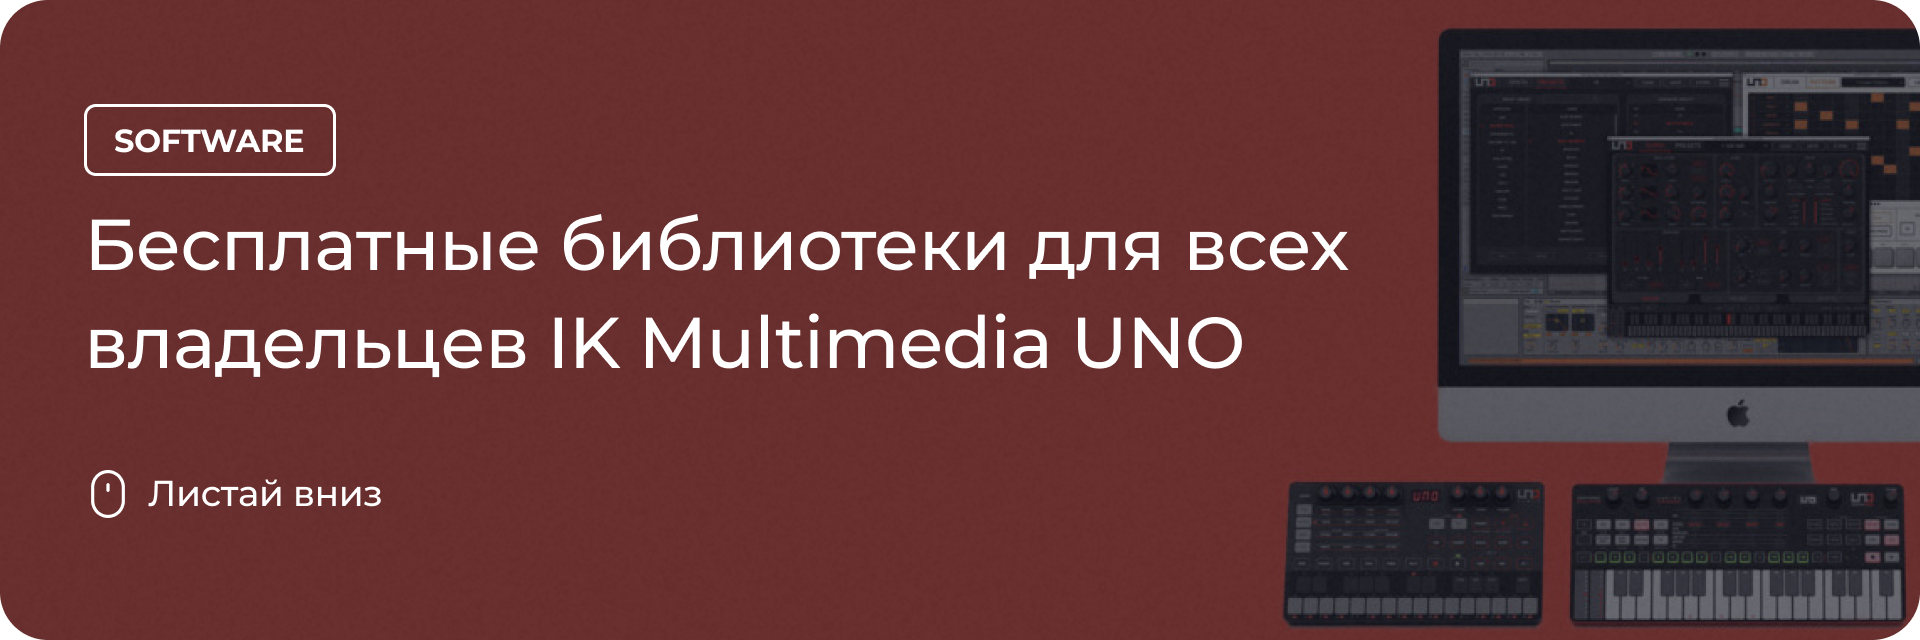 Бесплатные библиотеки для всех владельцев IK Multimedia UNO